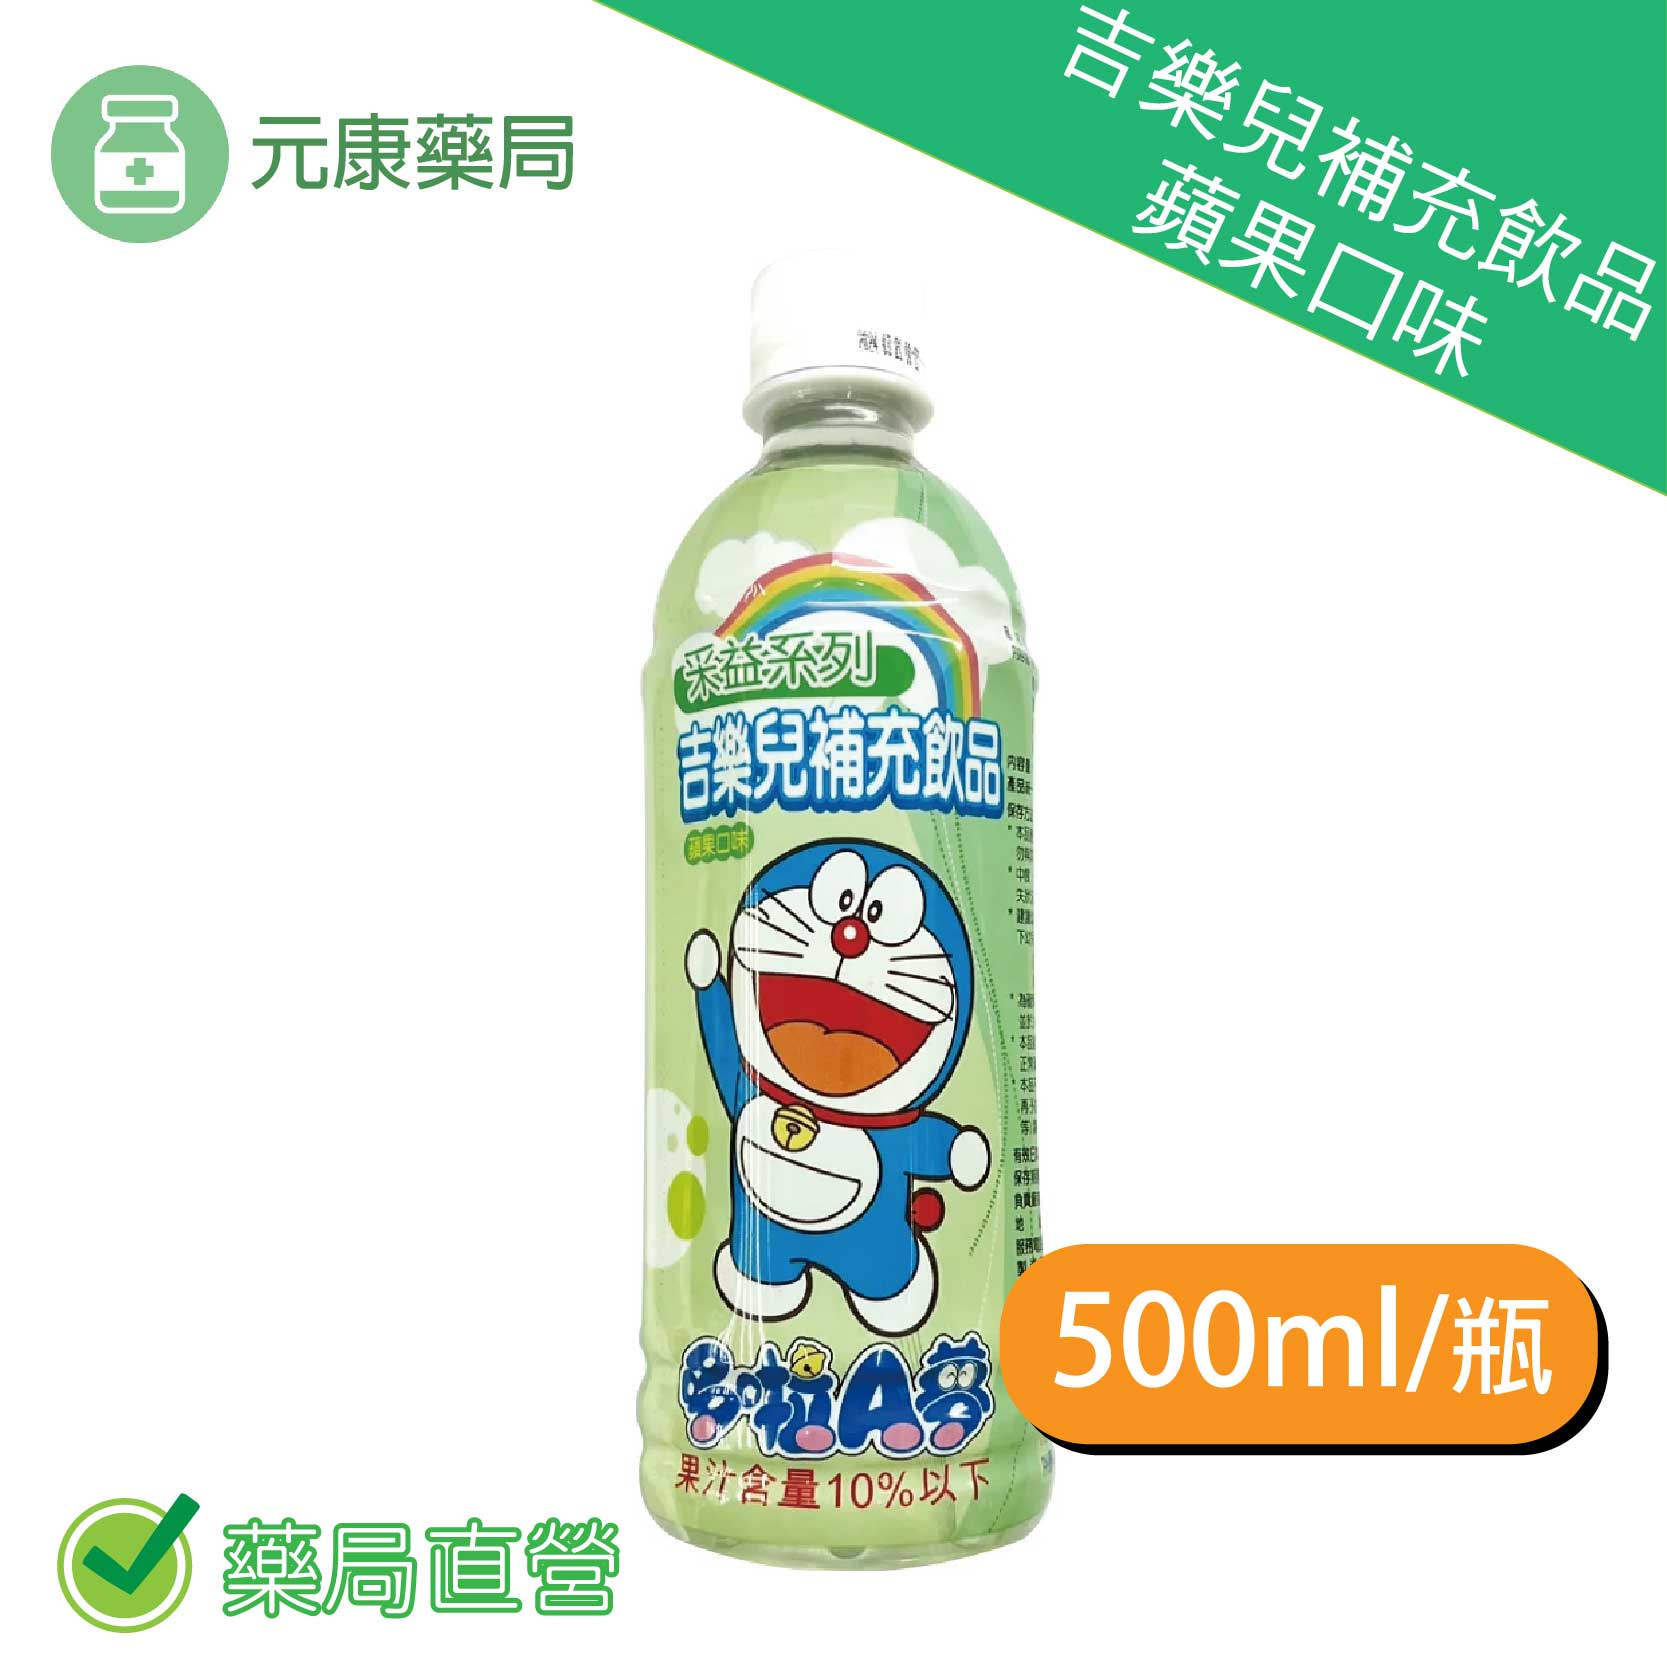 采益吉樂兒補充飲品 蘋果口味 500ml/瓶 台灣公司貨